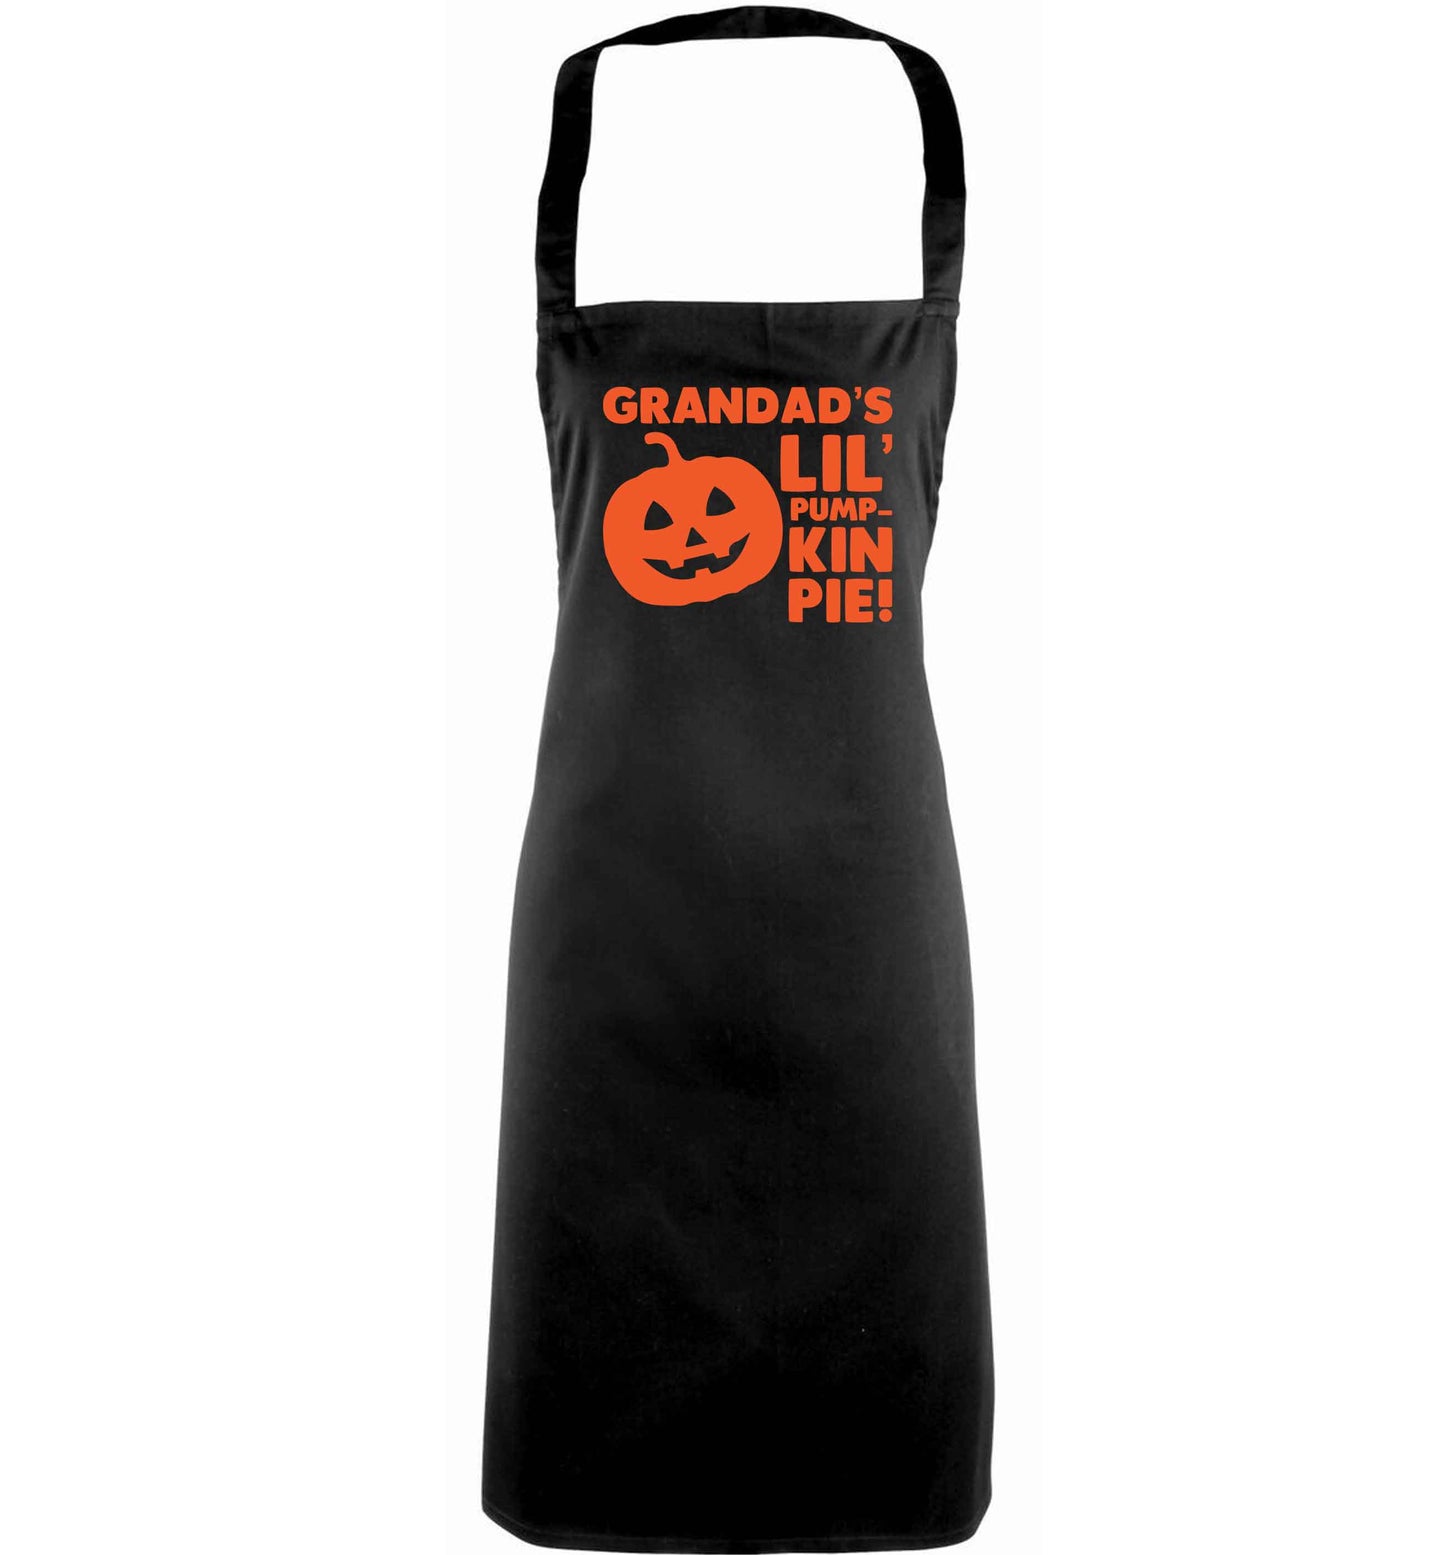 Grandad's lil' pumpkin pie adults black apron